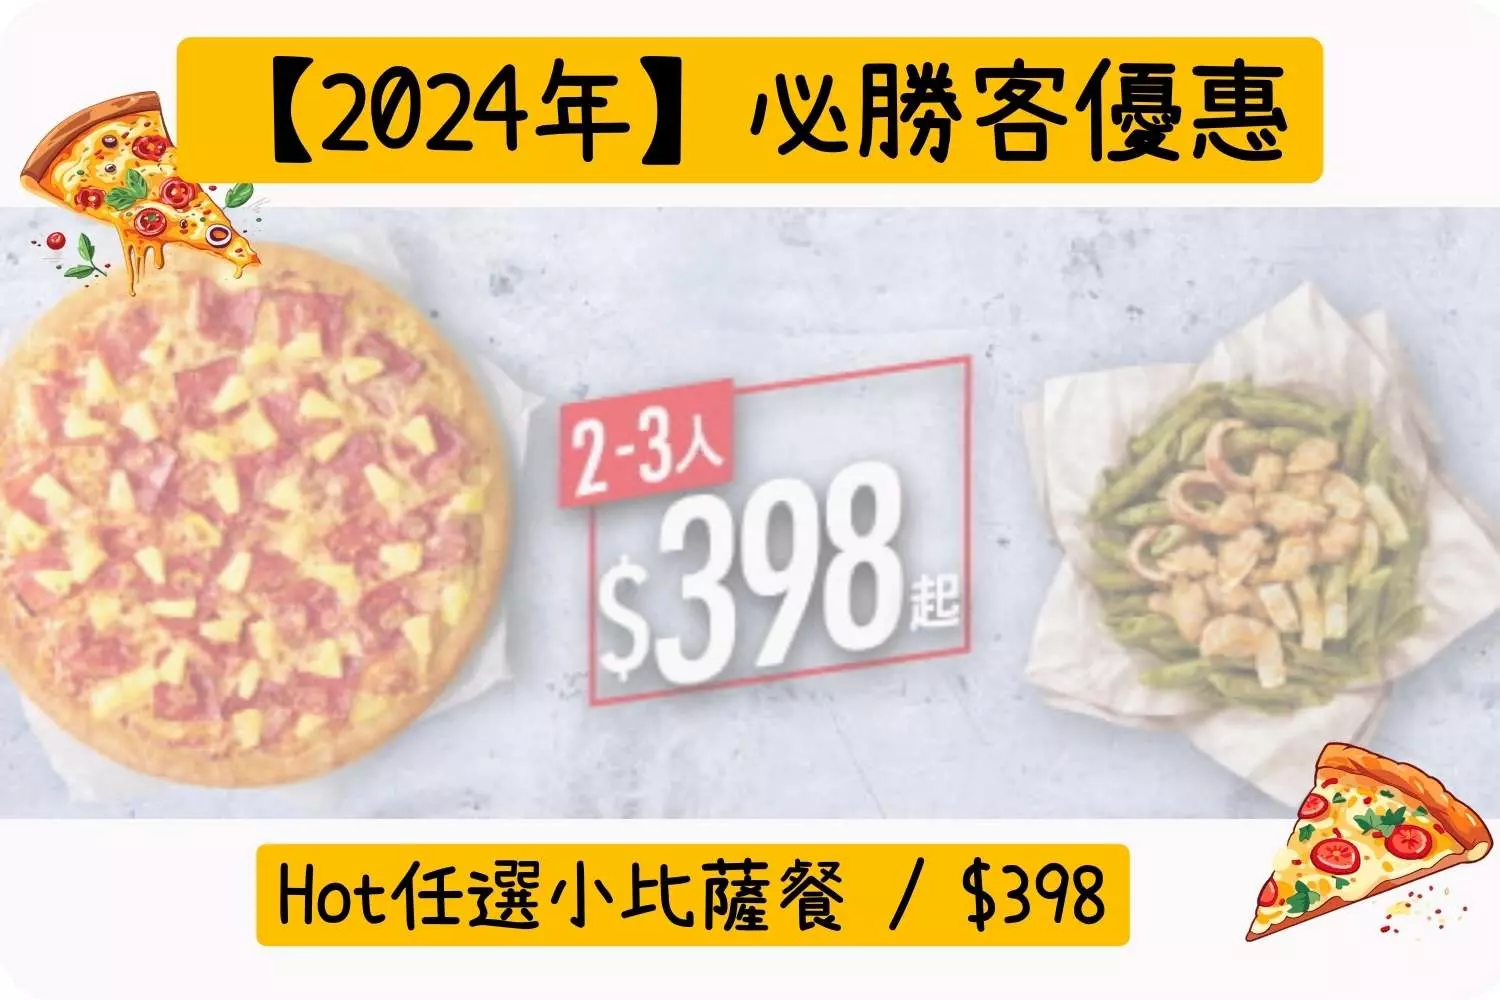 Hot任選小比薩餐 / $398